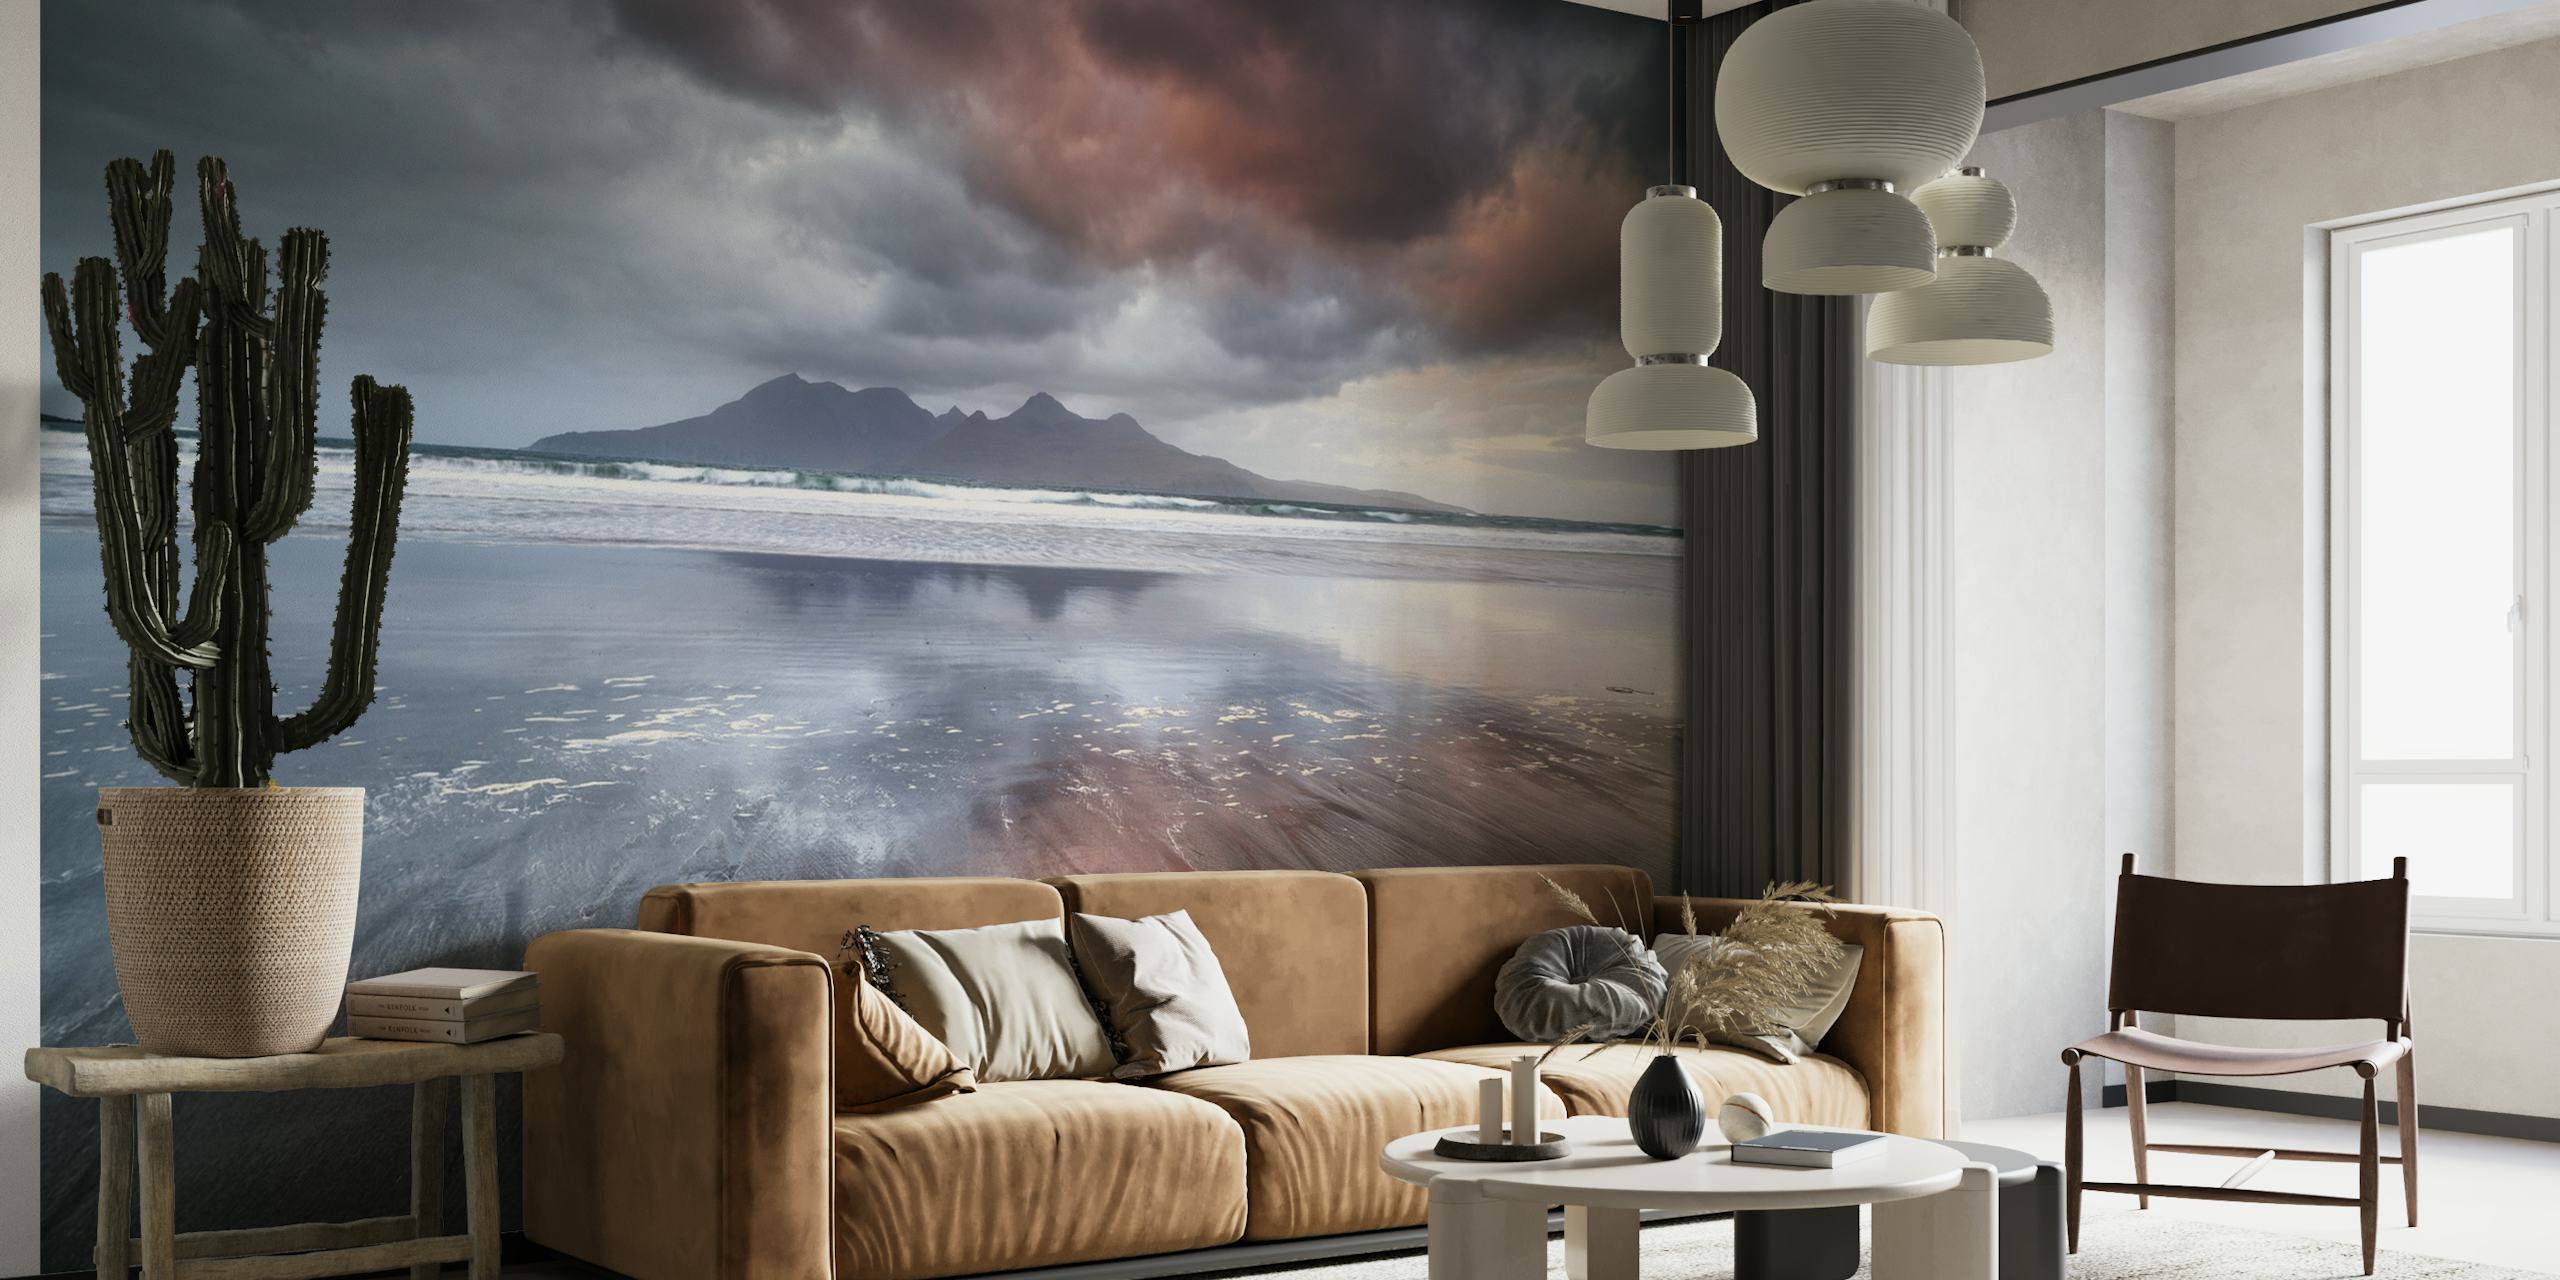 Fototapeta Laig Beach przedstawiająca dramatyczne chmury i spokojne wybrzeże